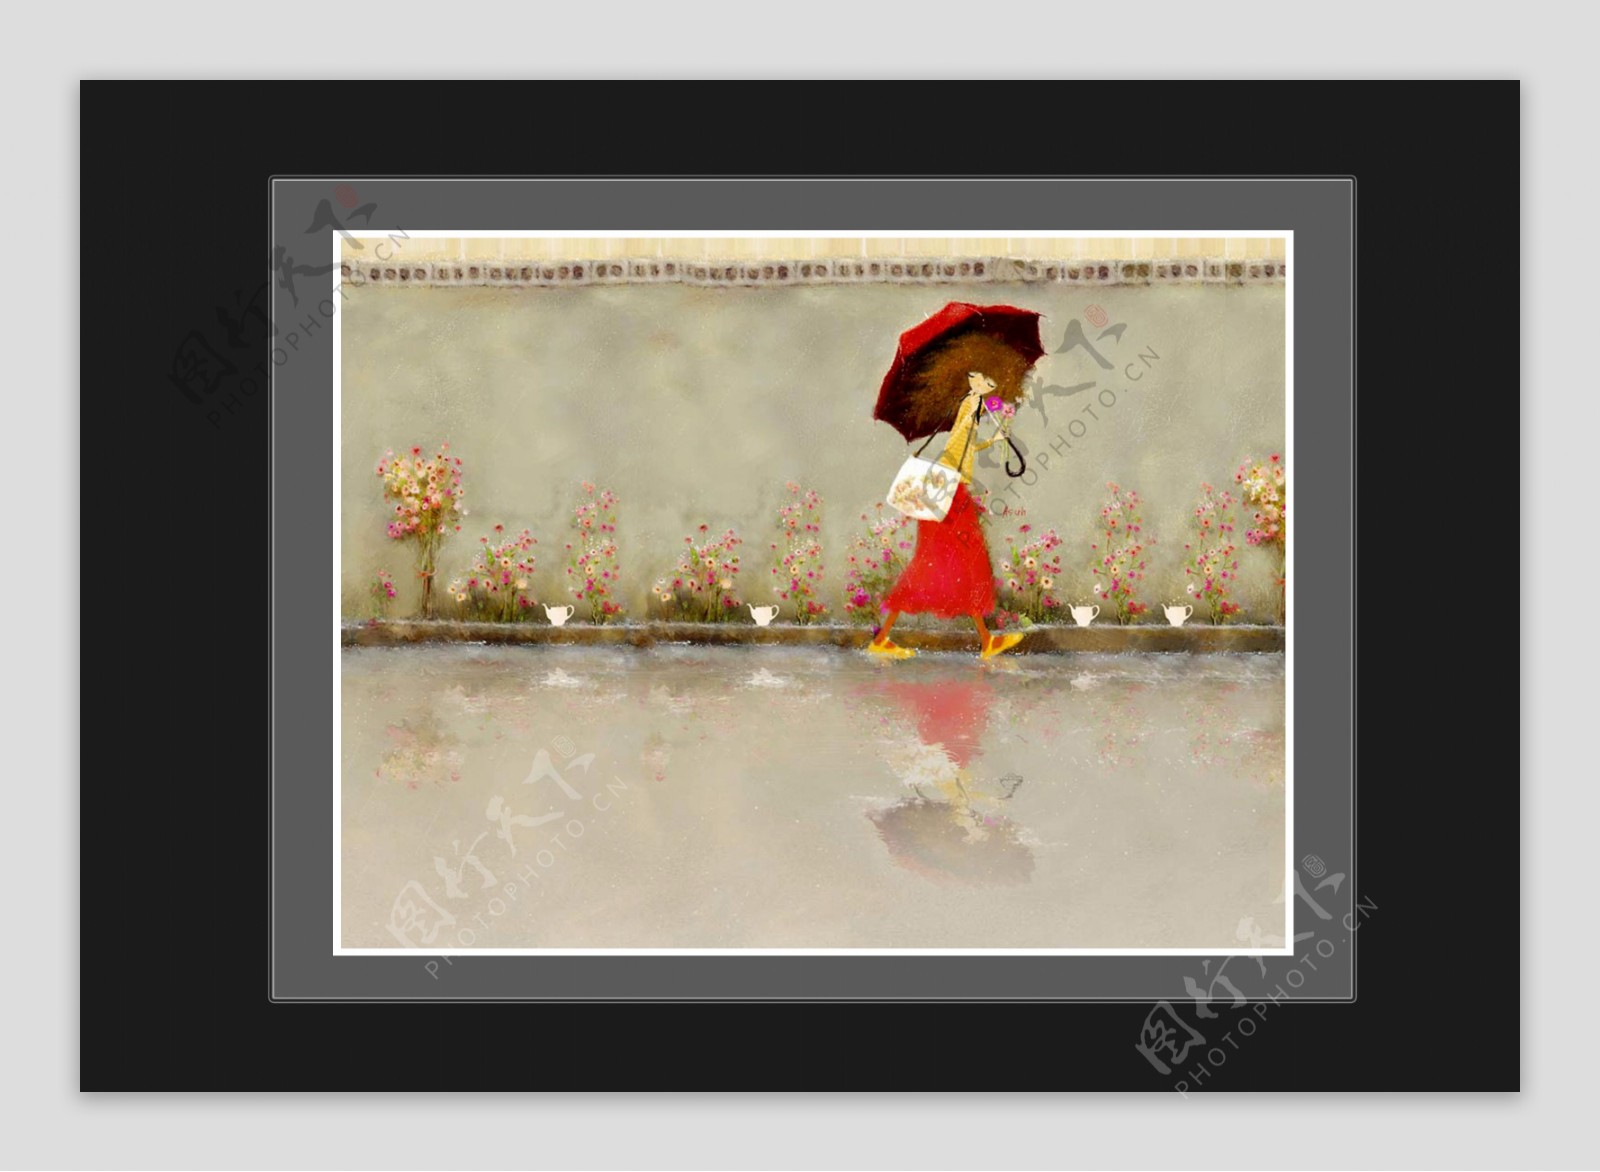 雨中撑伞的小姑娘图片